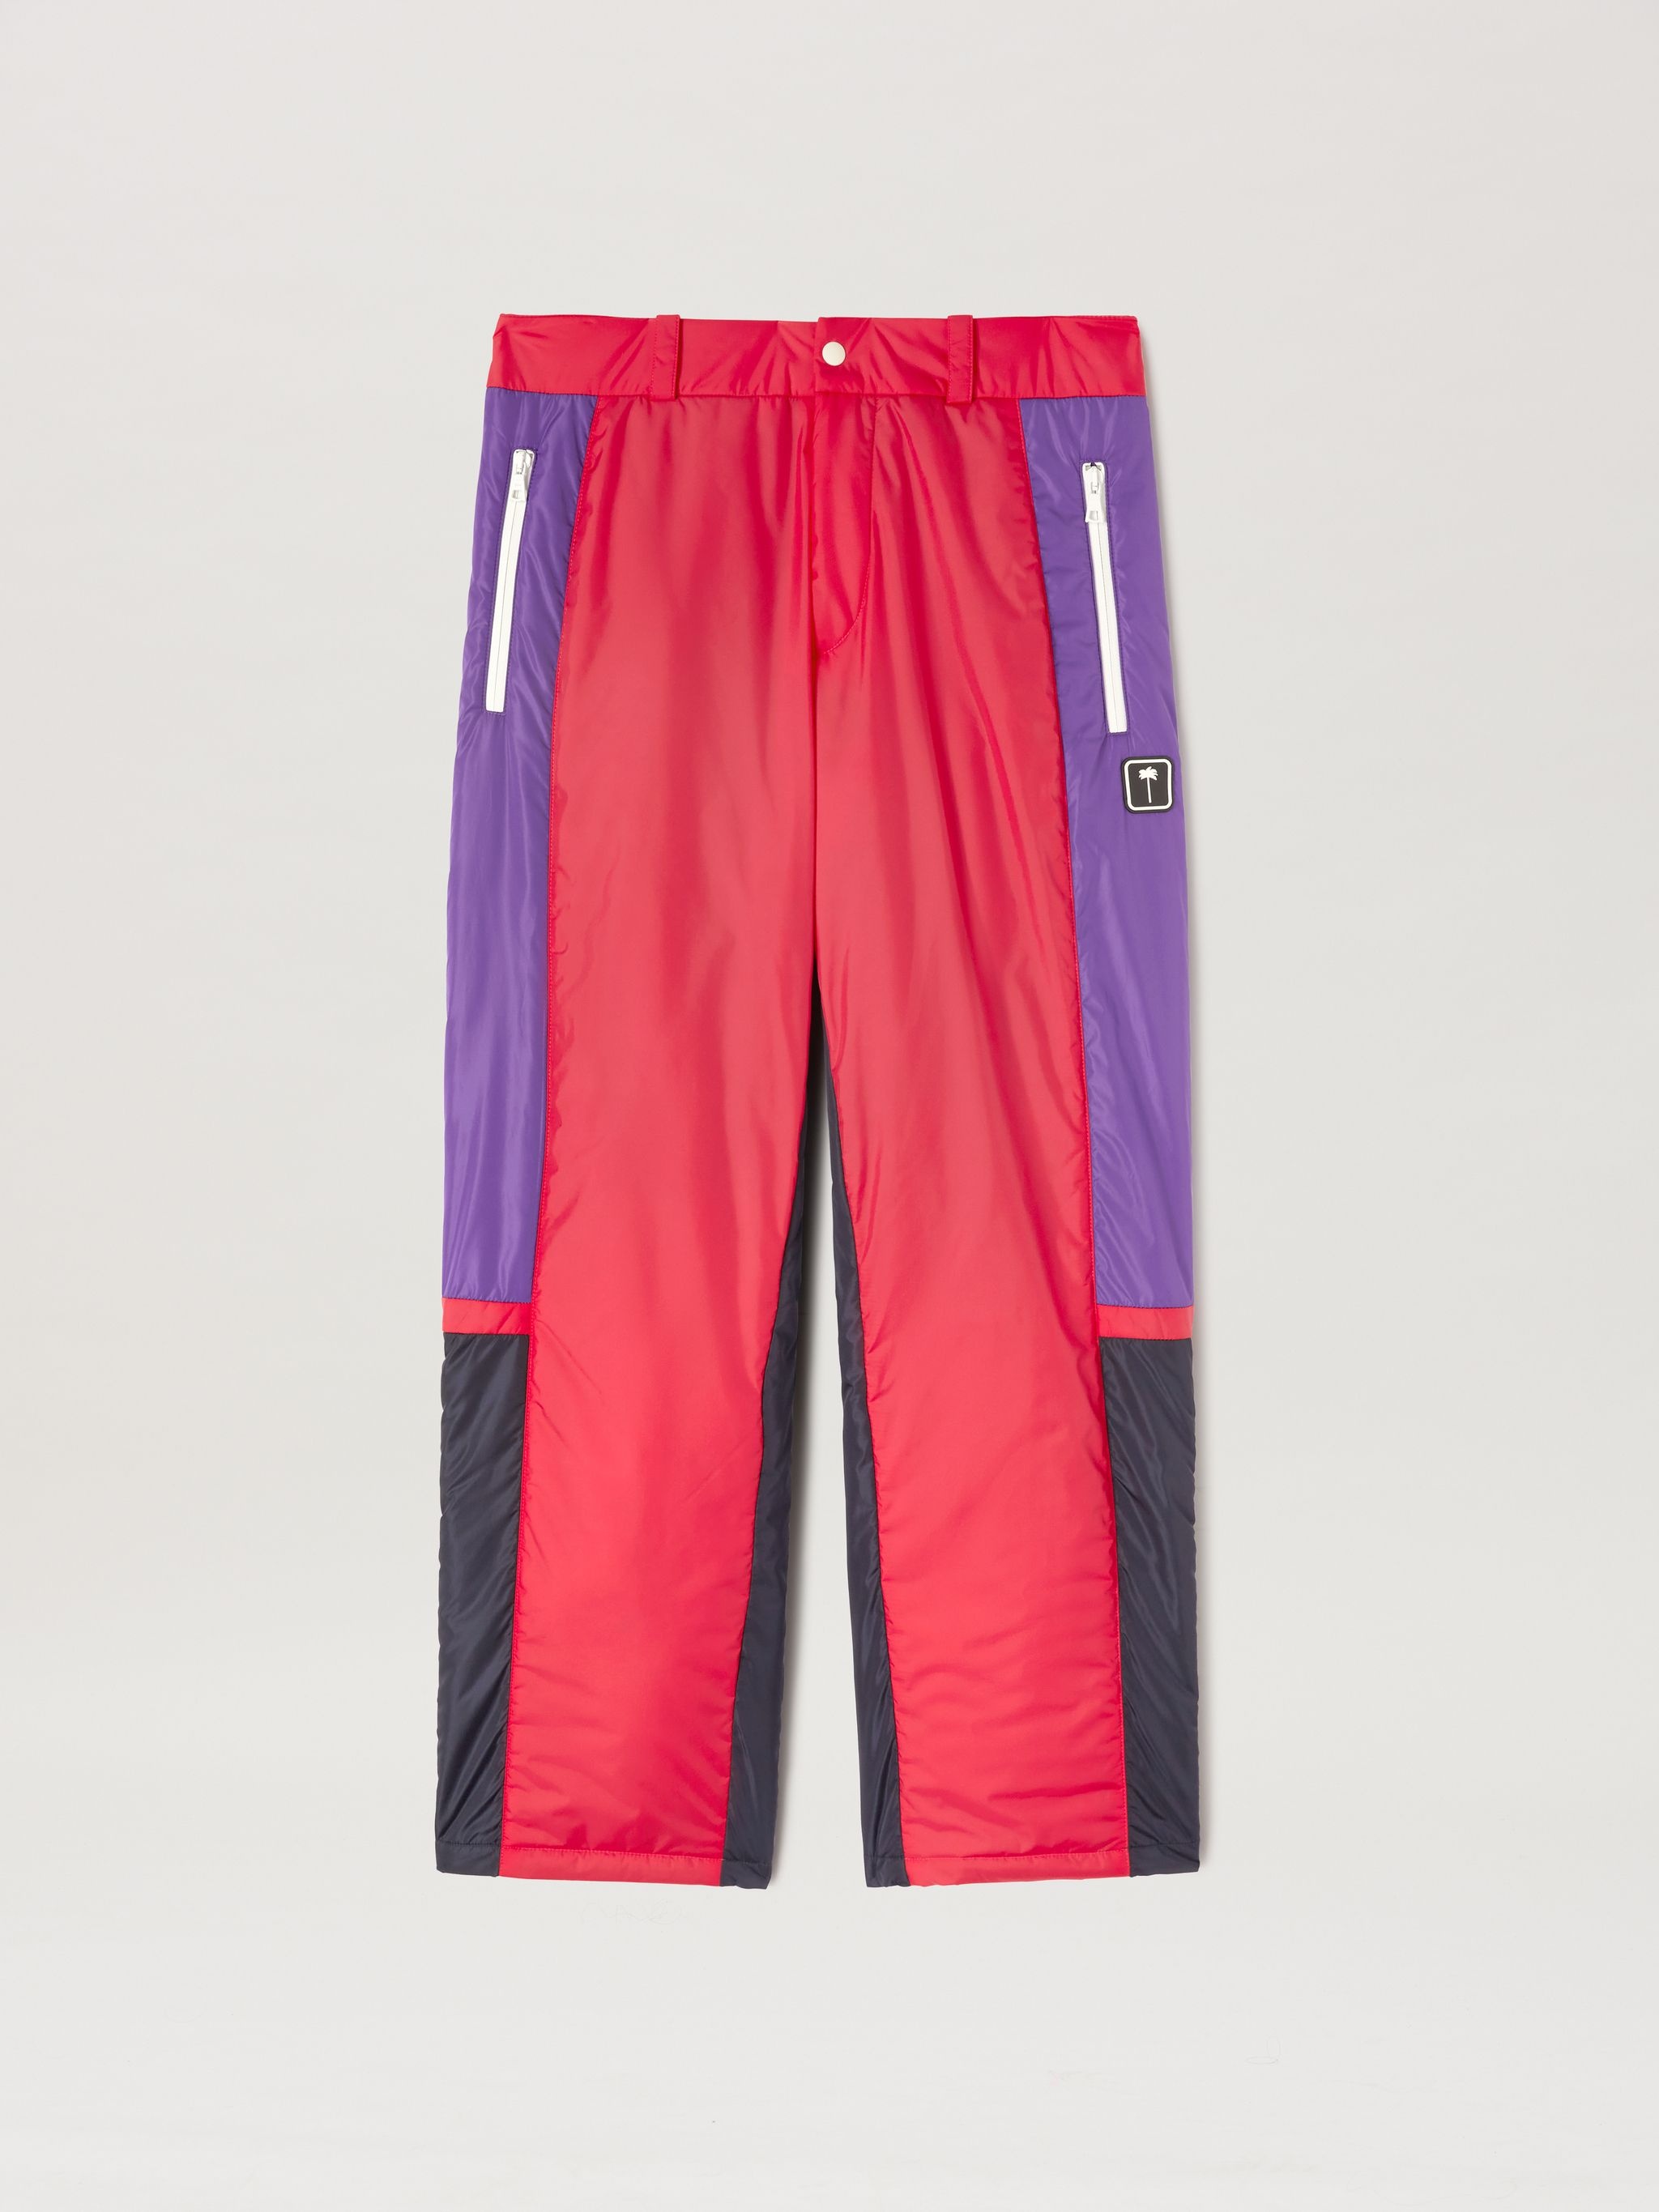 Pxp Thunderbolt Ski Trousers - 1